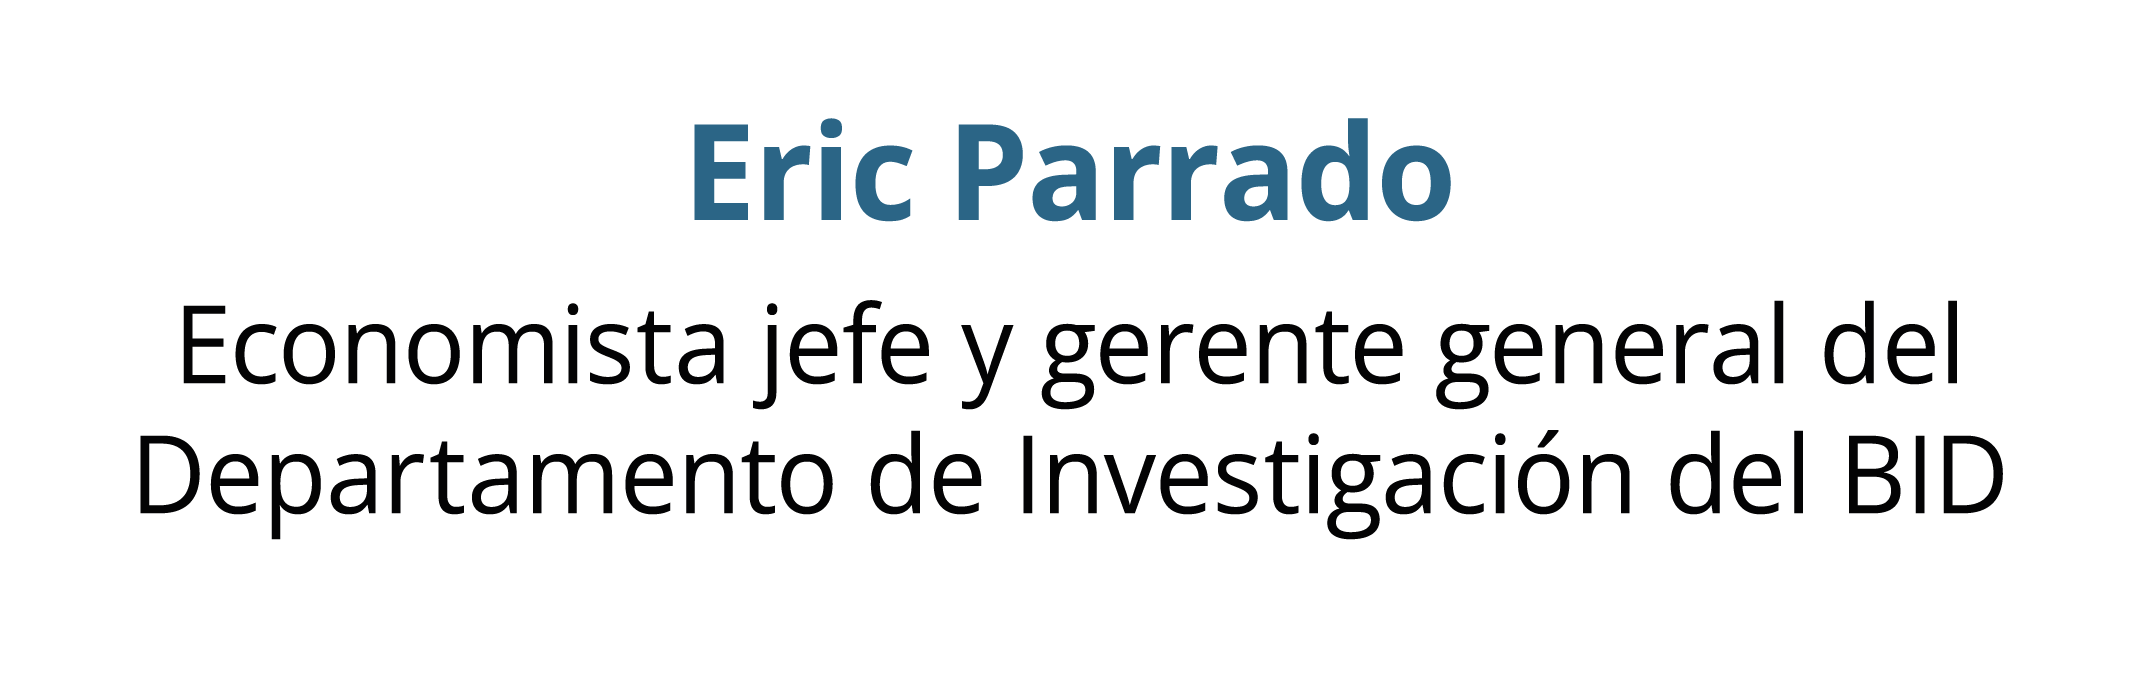 Eric Parrado